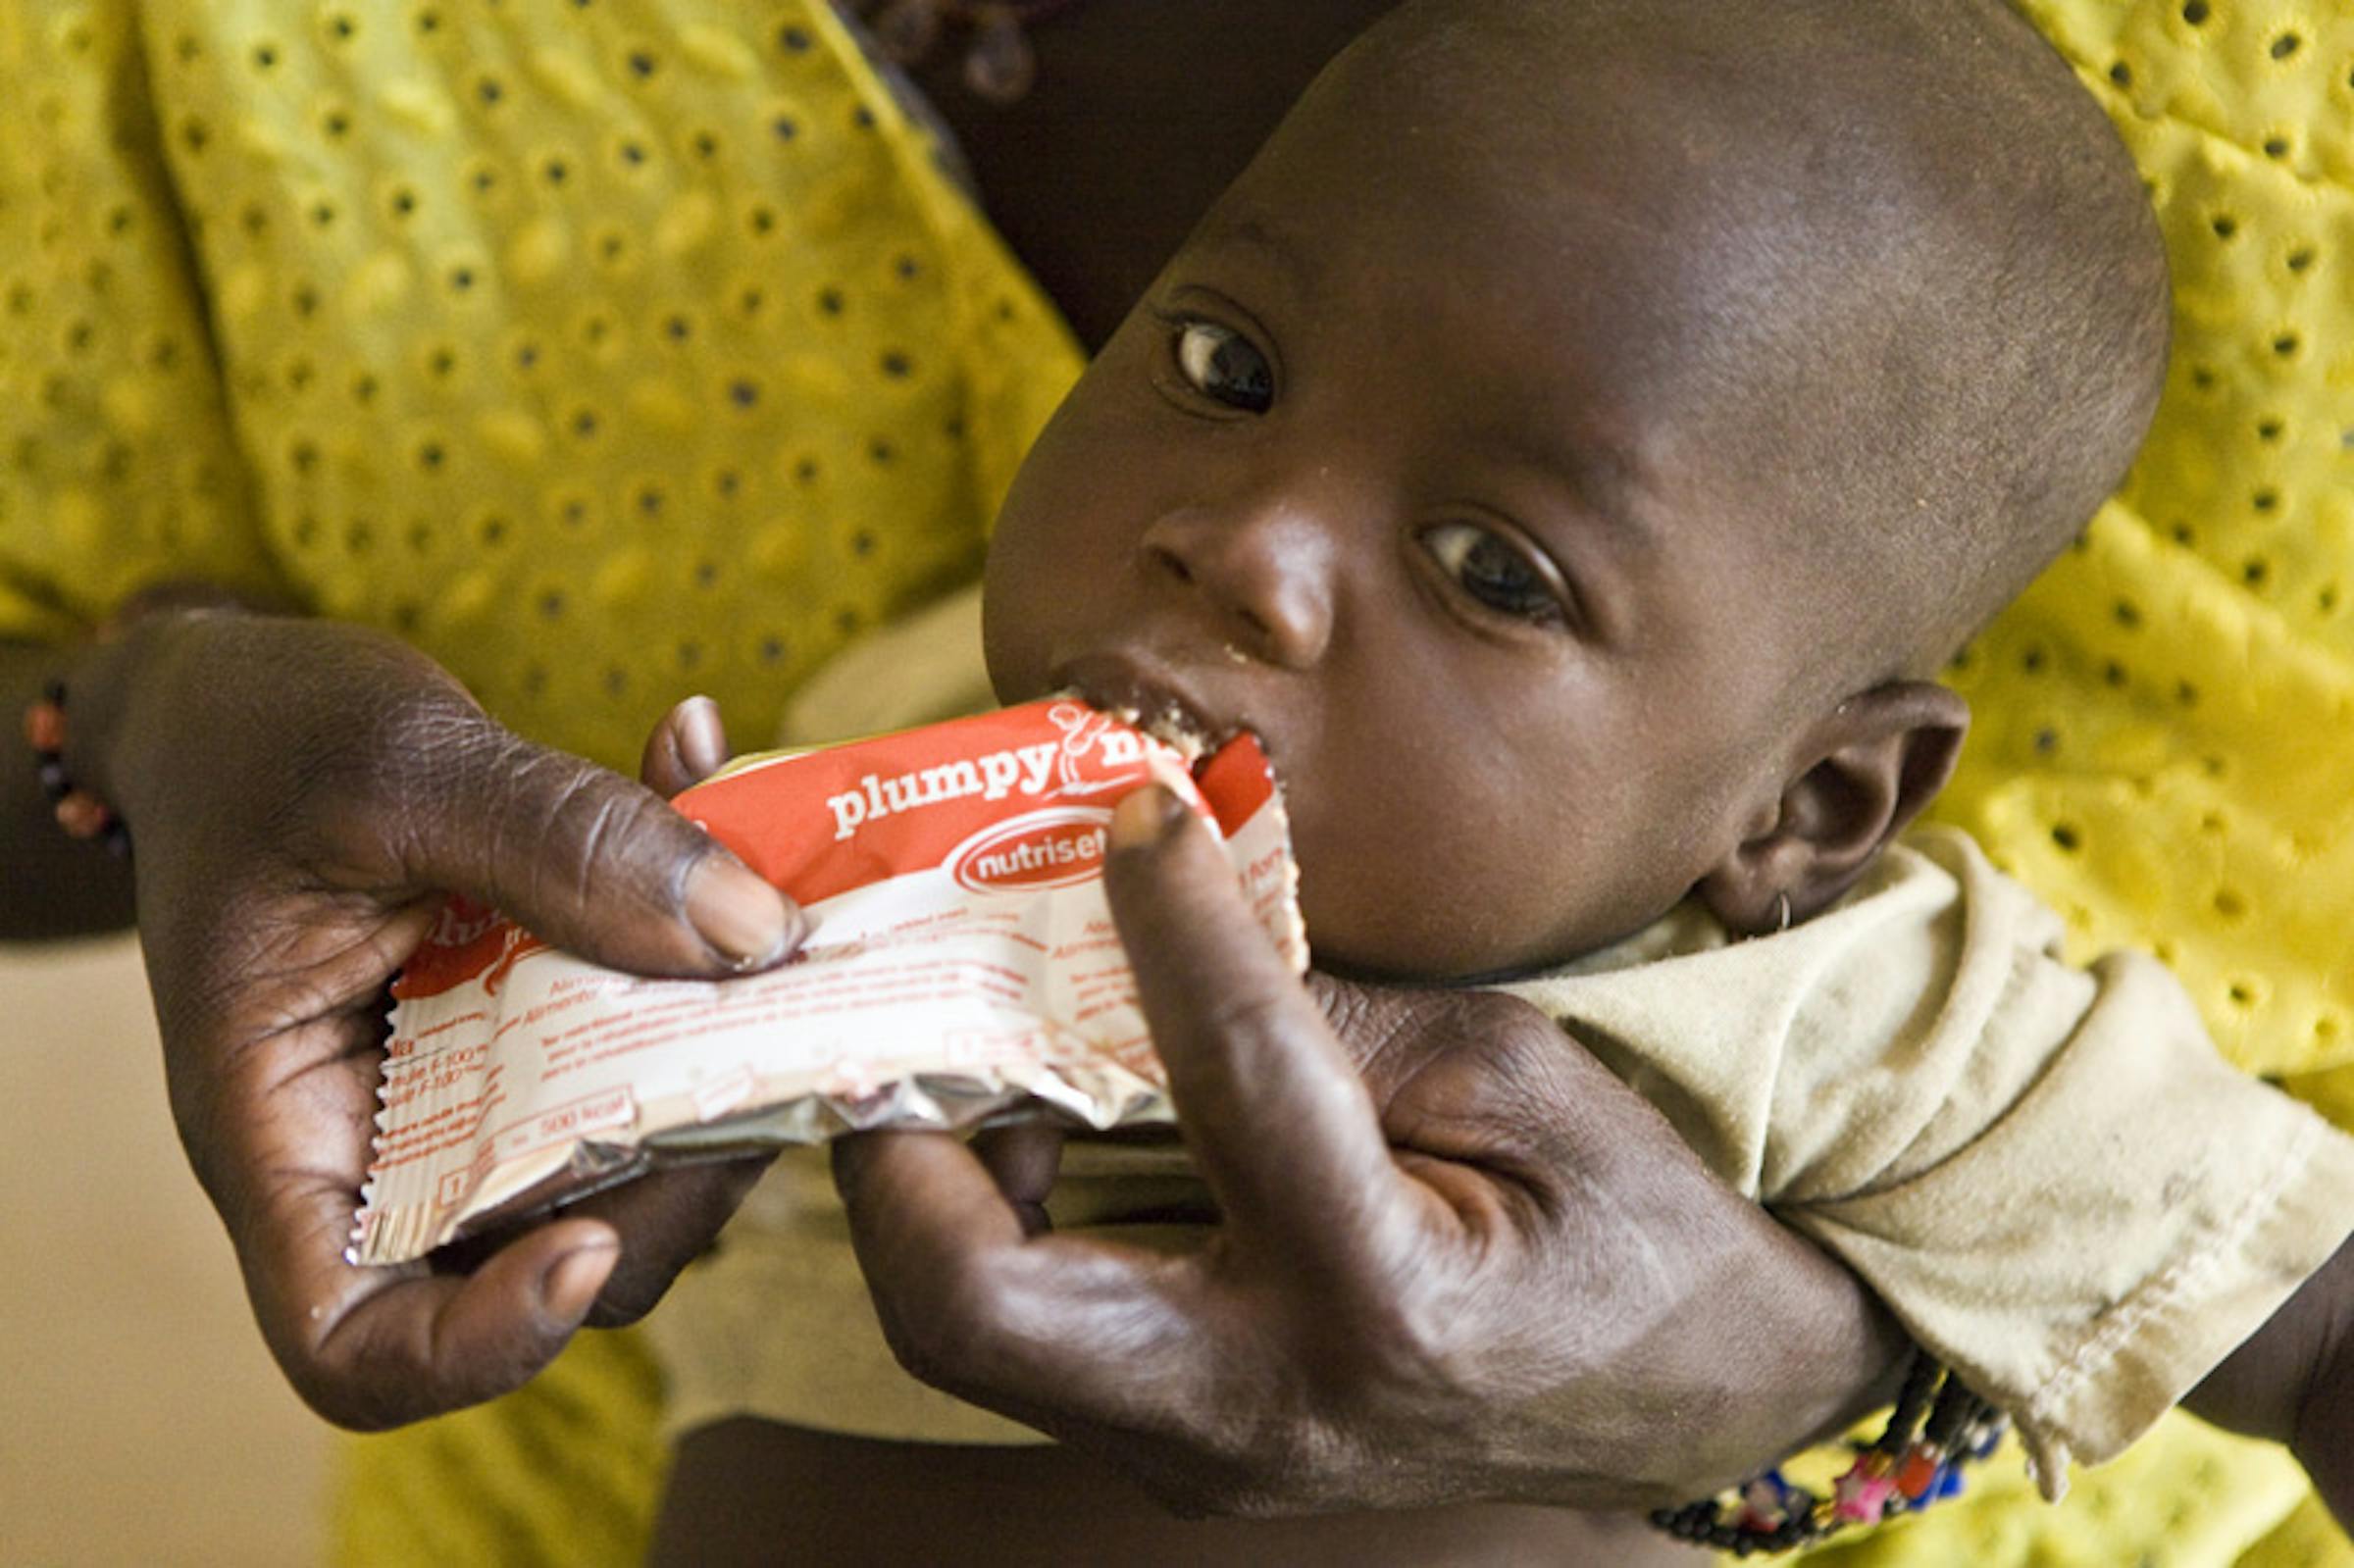 Un bambino affetto da malnutrizione grave con una dose di Plumpynut, un alimento terapeutico pronto per l'uso: foto scattata a Djenne, nella regione di Mopti (Mali) - ©UNICEF Mali/2012-0047/Harandane Dicko